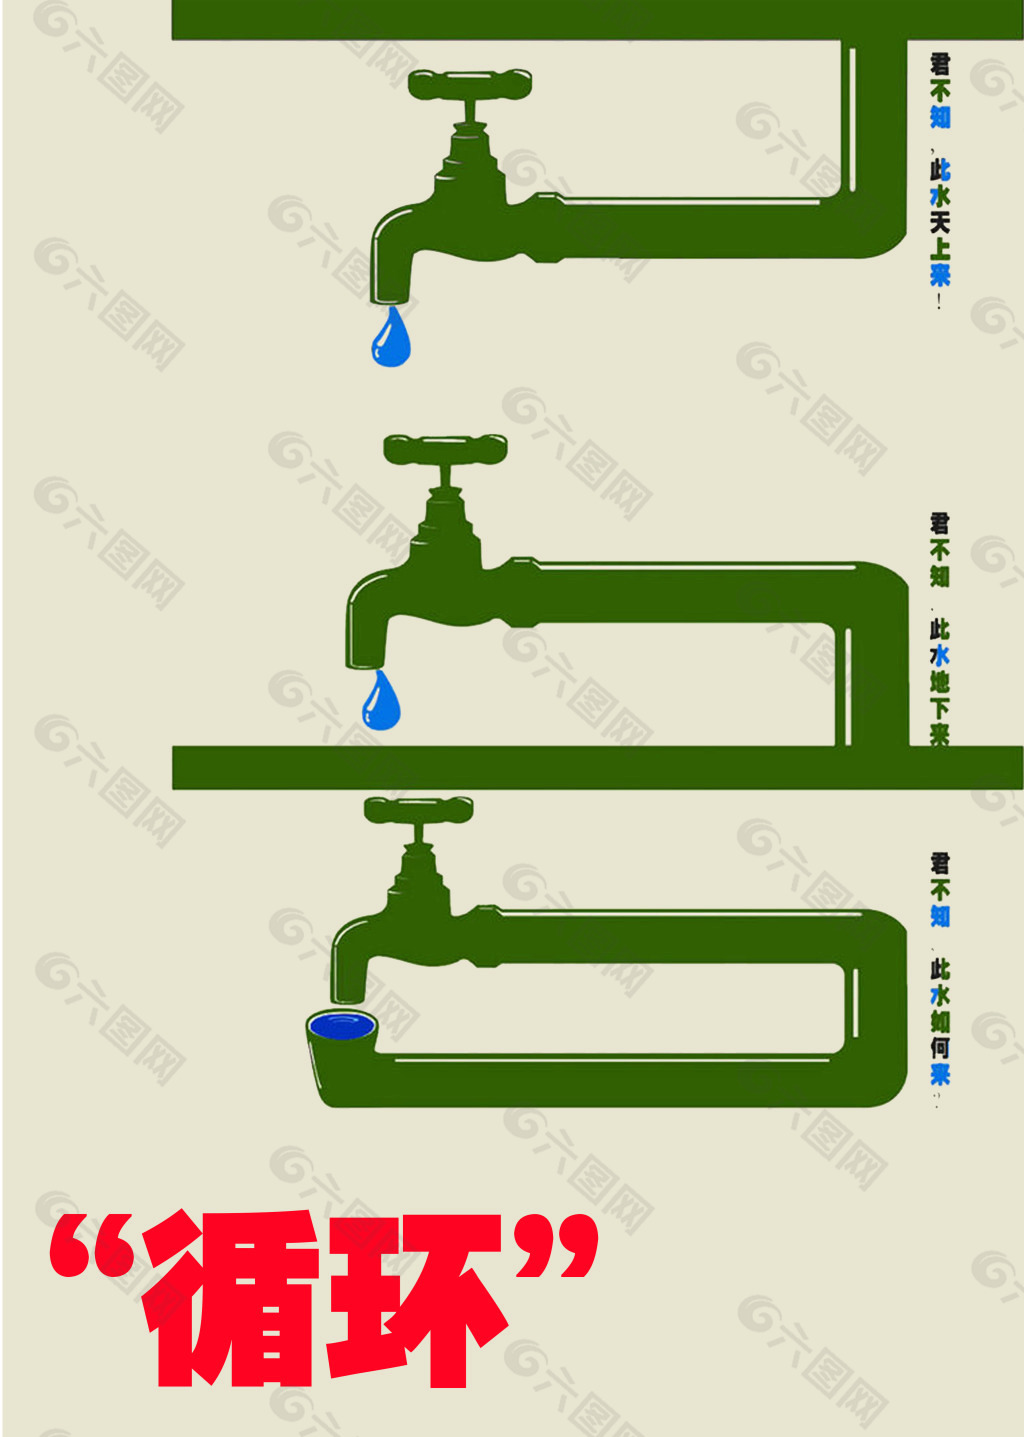 节约用水的海报文字图片